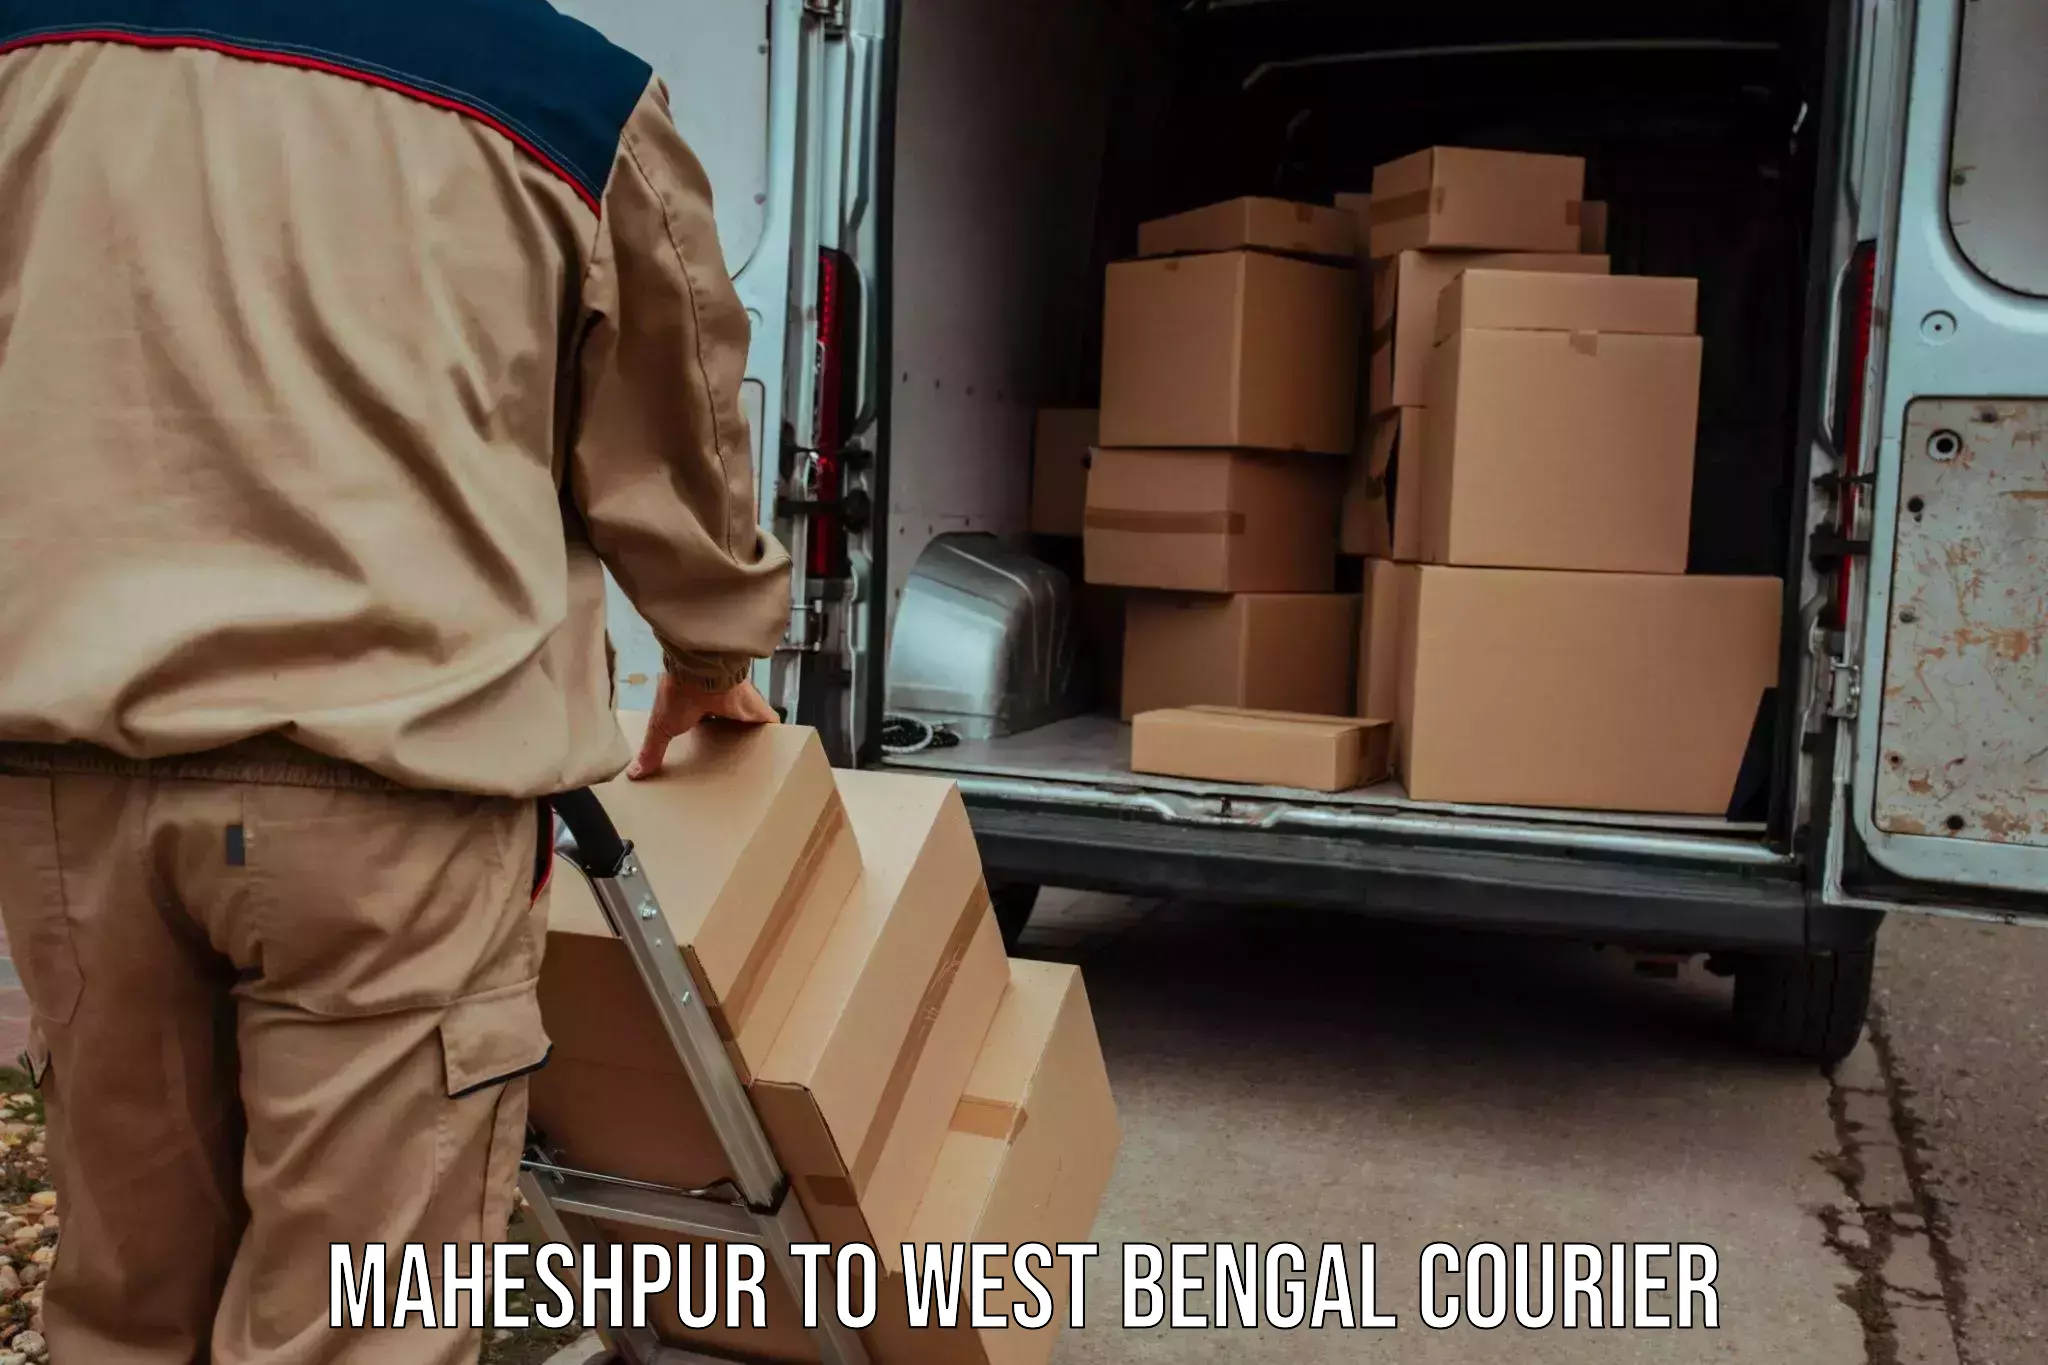 Global logistics network Maheshpur to Siliguri